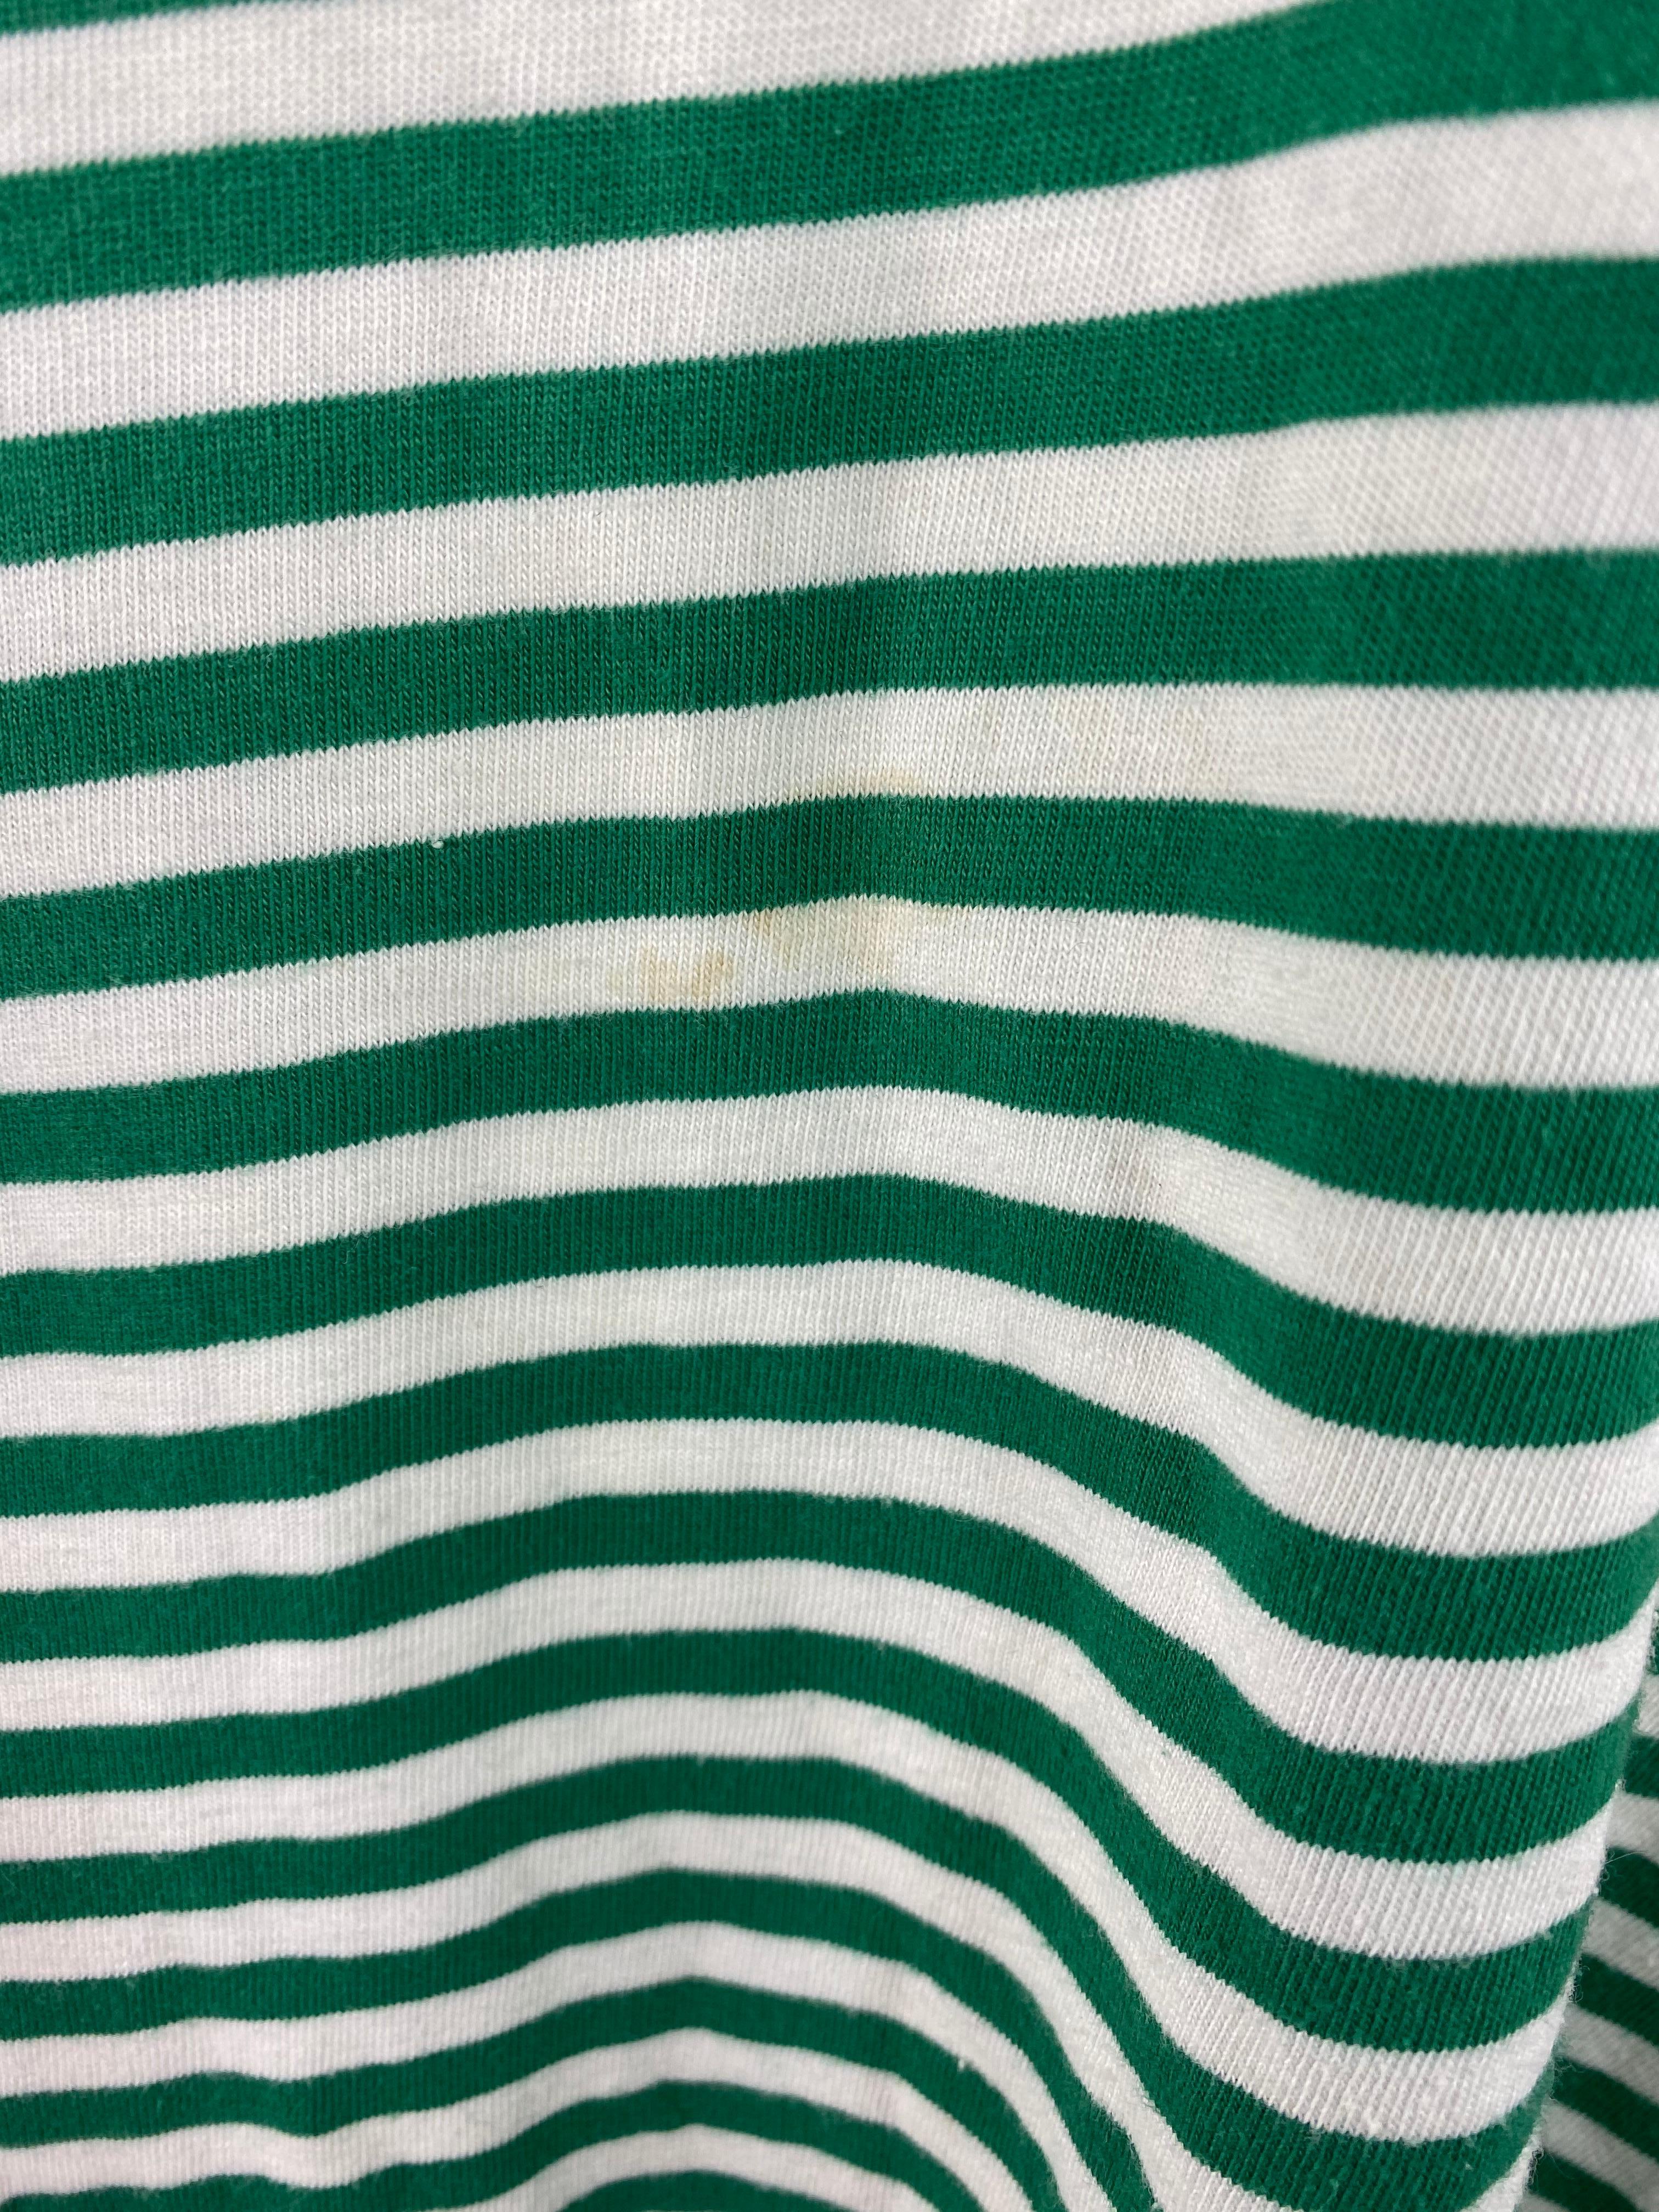 Einzelheiten zum Produkt:

Das T-Shirt besteht aus 100% Baumwolle, hat ein grün-weiß gestreiftes Muster mit zwei goldenen Knöpfen auf jeder Seite, einen Rundhalsausschnitt und kurze Ärmel. Hergestellt in Frankreich.